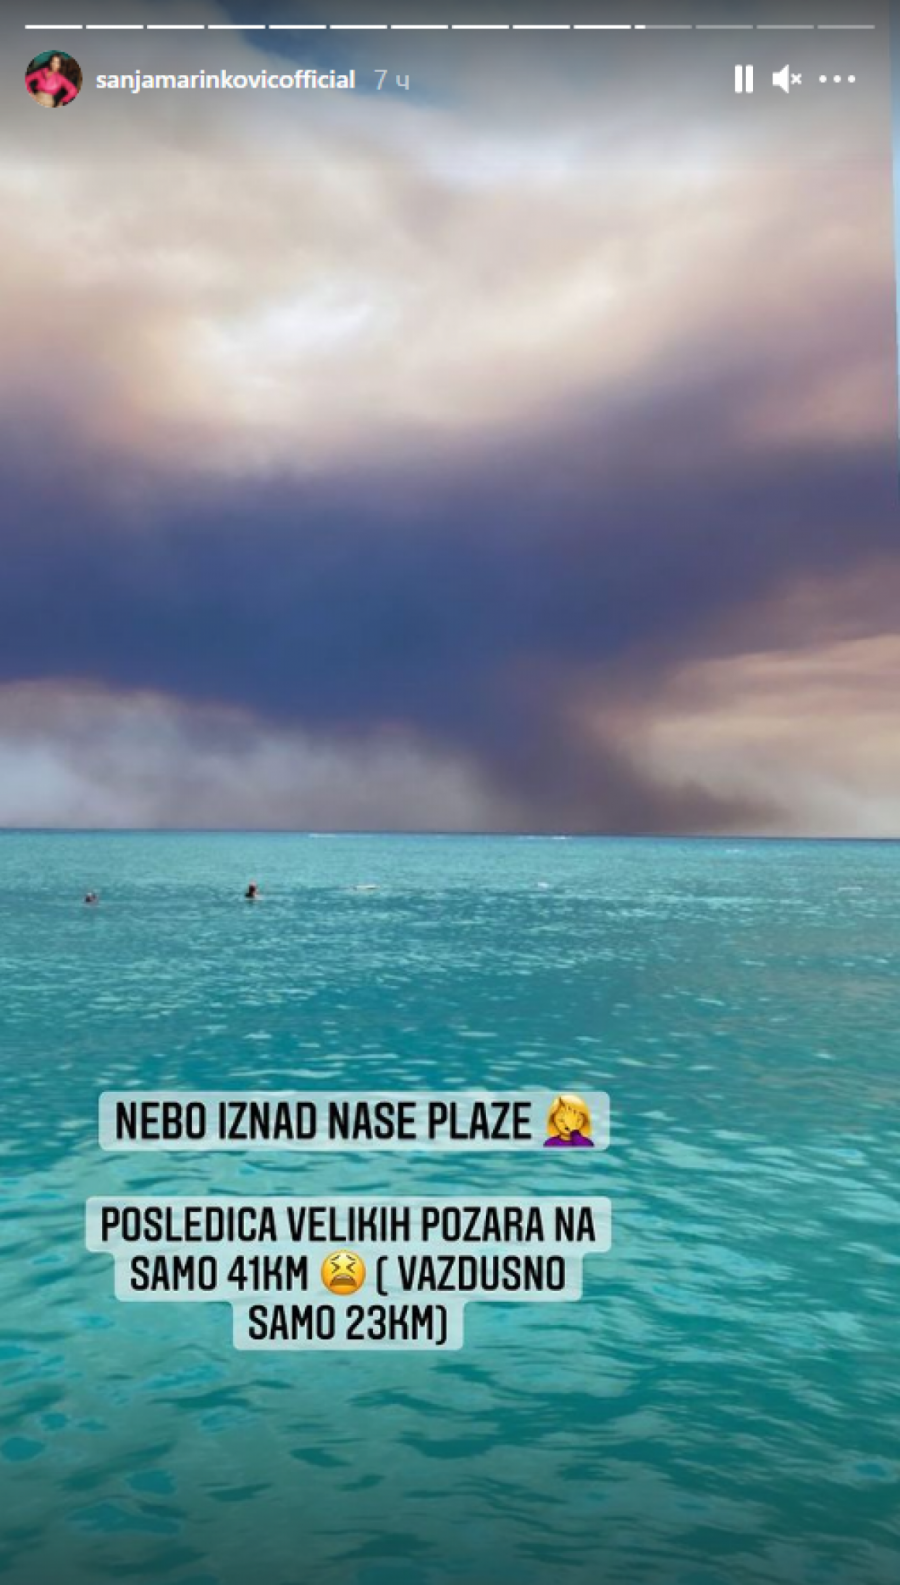 STRAVA I UŽAS! Sanja Marinković objavila jezive prizore požara u Turskoj, oblak dima guta letovalište u kom boravi! (FOTO)